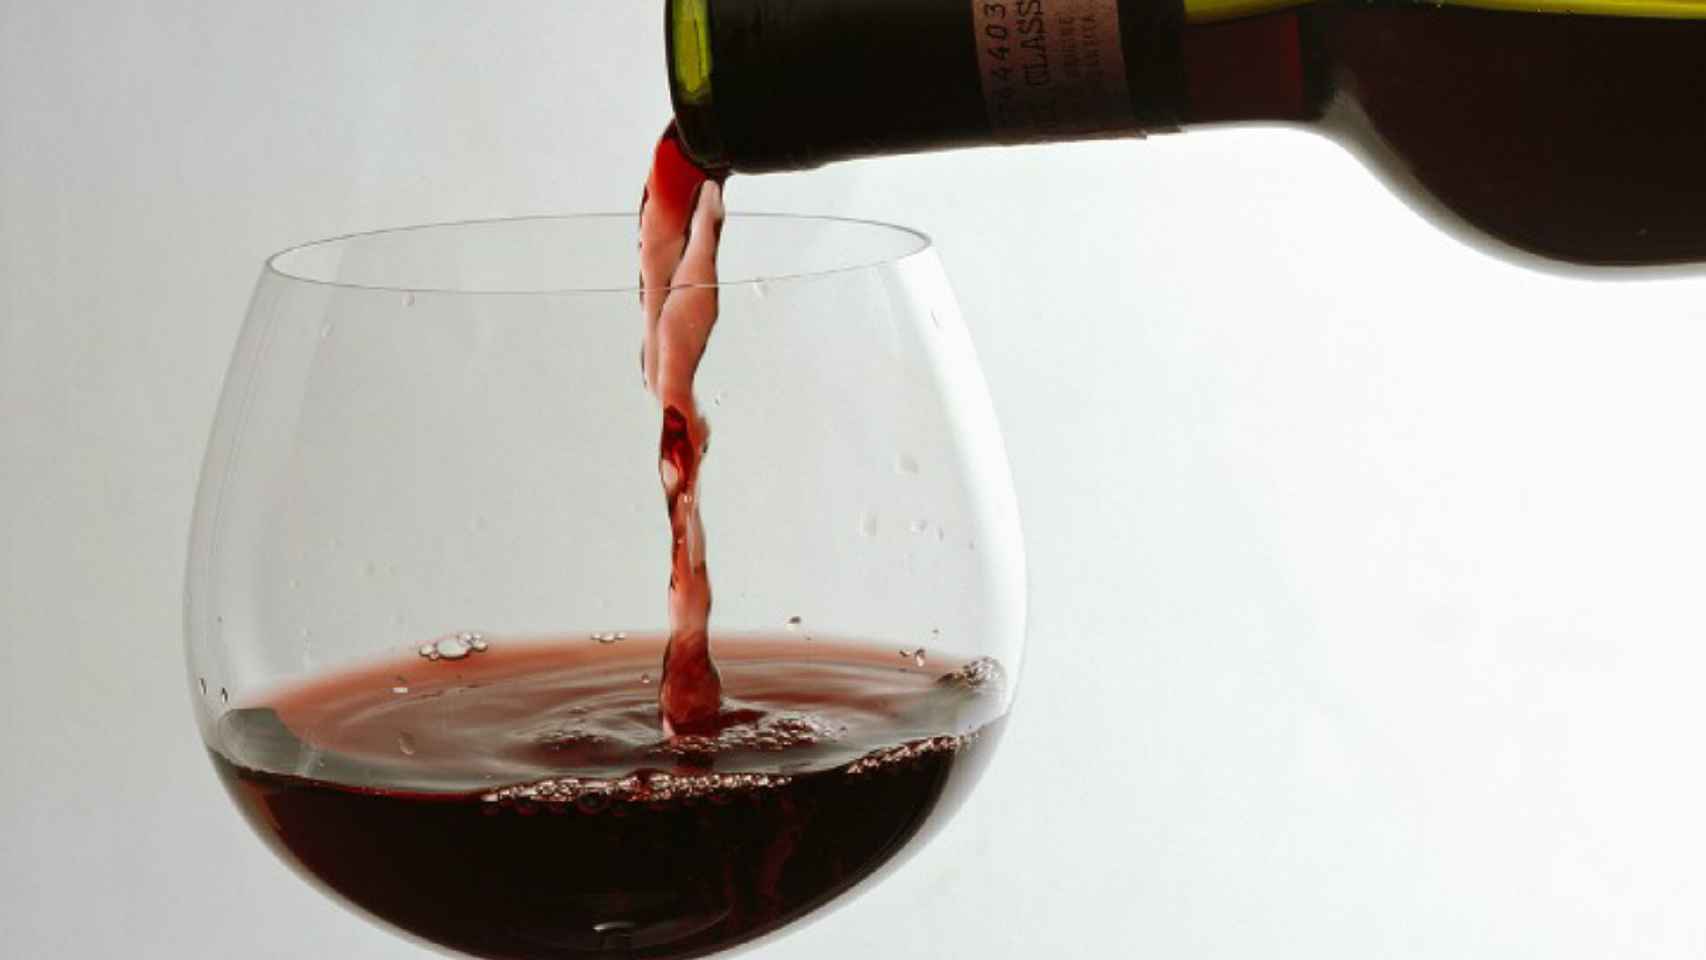 Adiós a la copa de vino diaria: la cantidad que acelera el envejecimiento y  hace perder años de vida